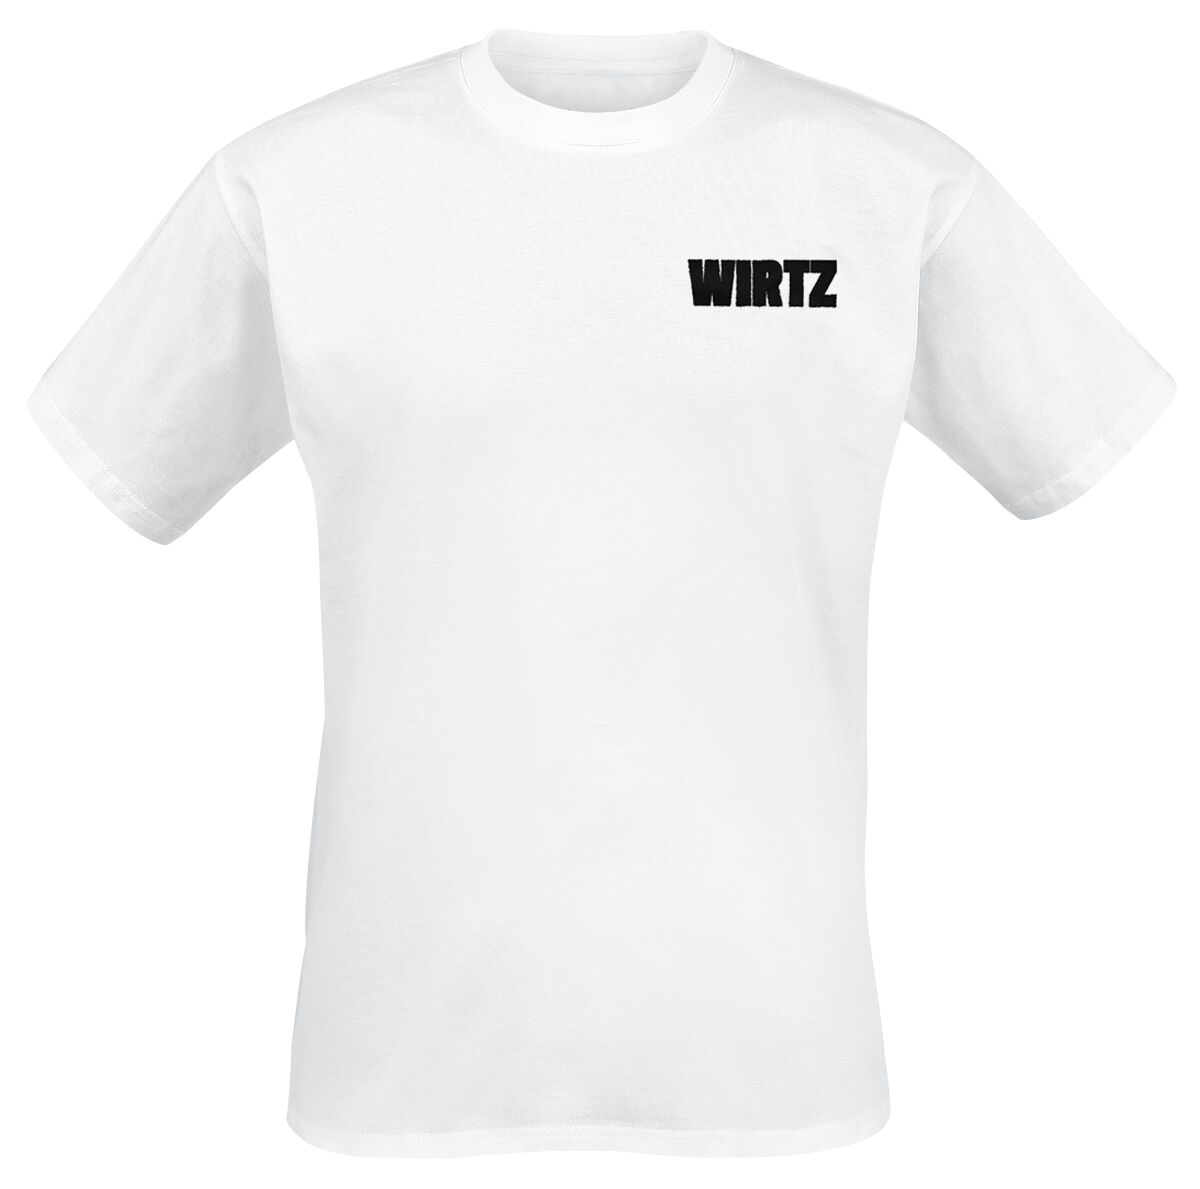 Wirtz T-Shirt - DNA - S bis XL - für Männer - Größe XL - weiß  - Lizenziertes Merchandise!